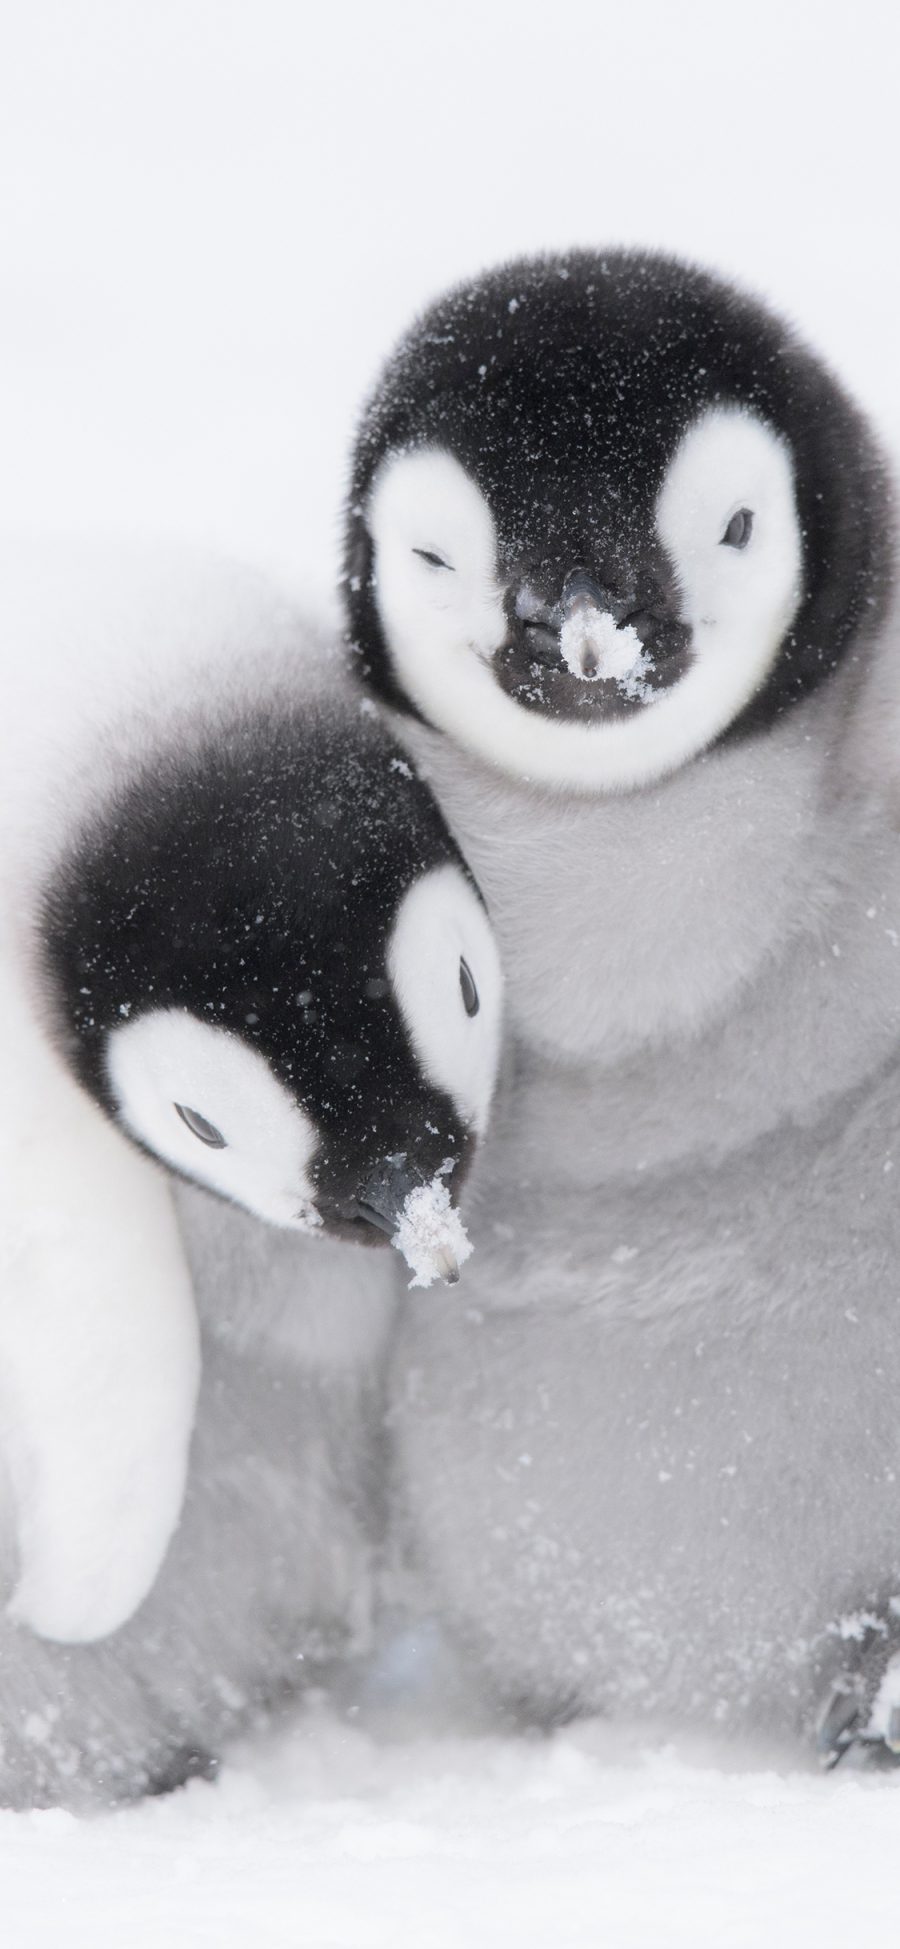 [2436×1125]企鹅 南极 雪地 寒冷 苹果手机壁纸图片